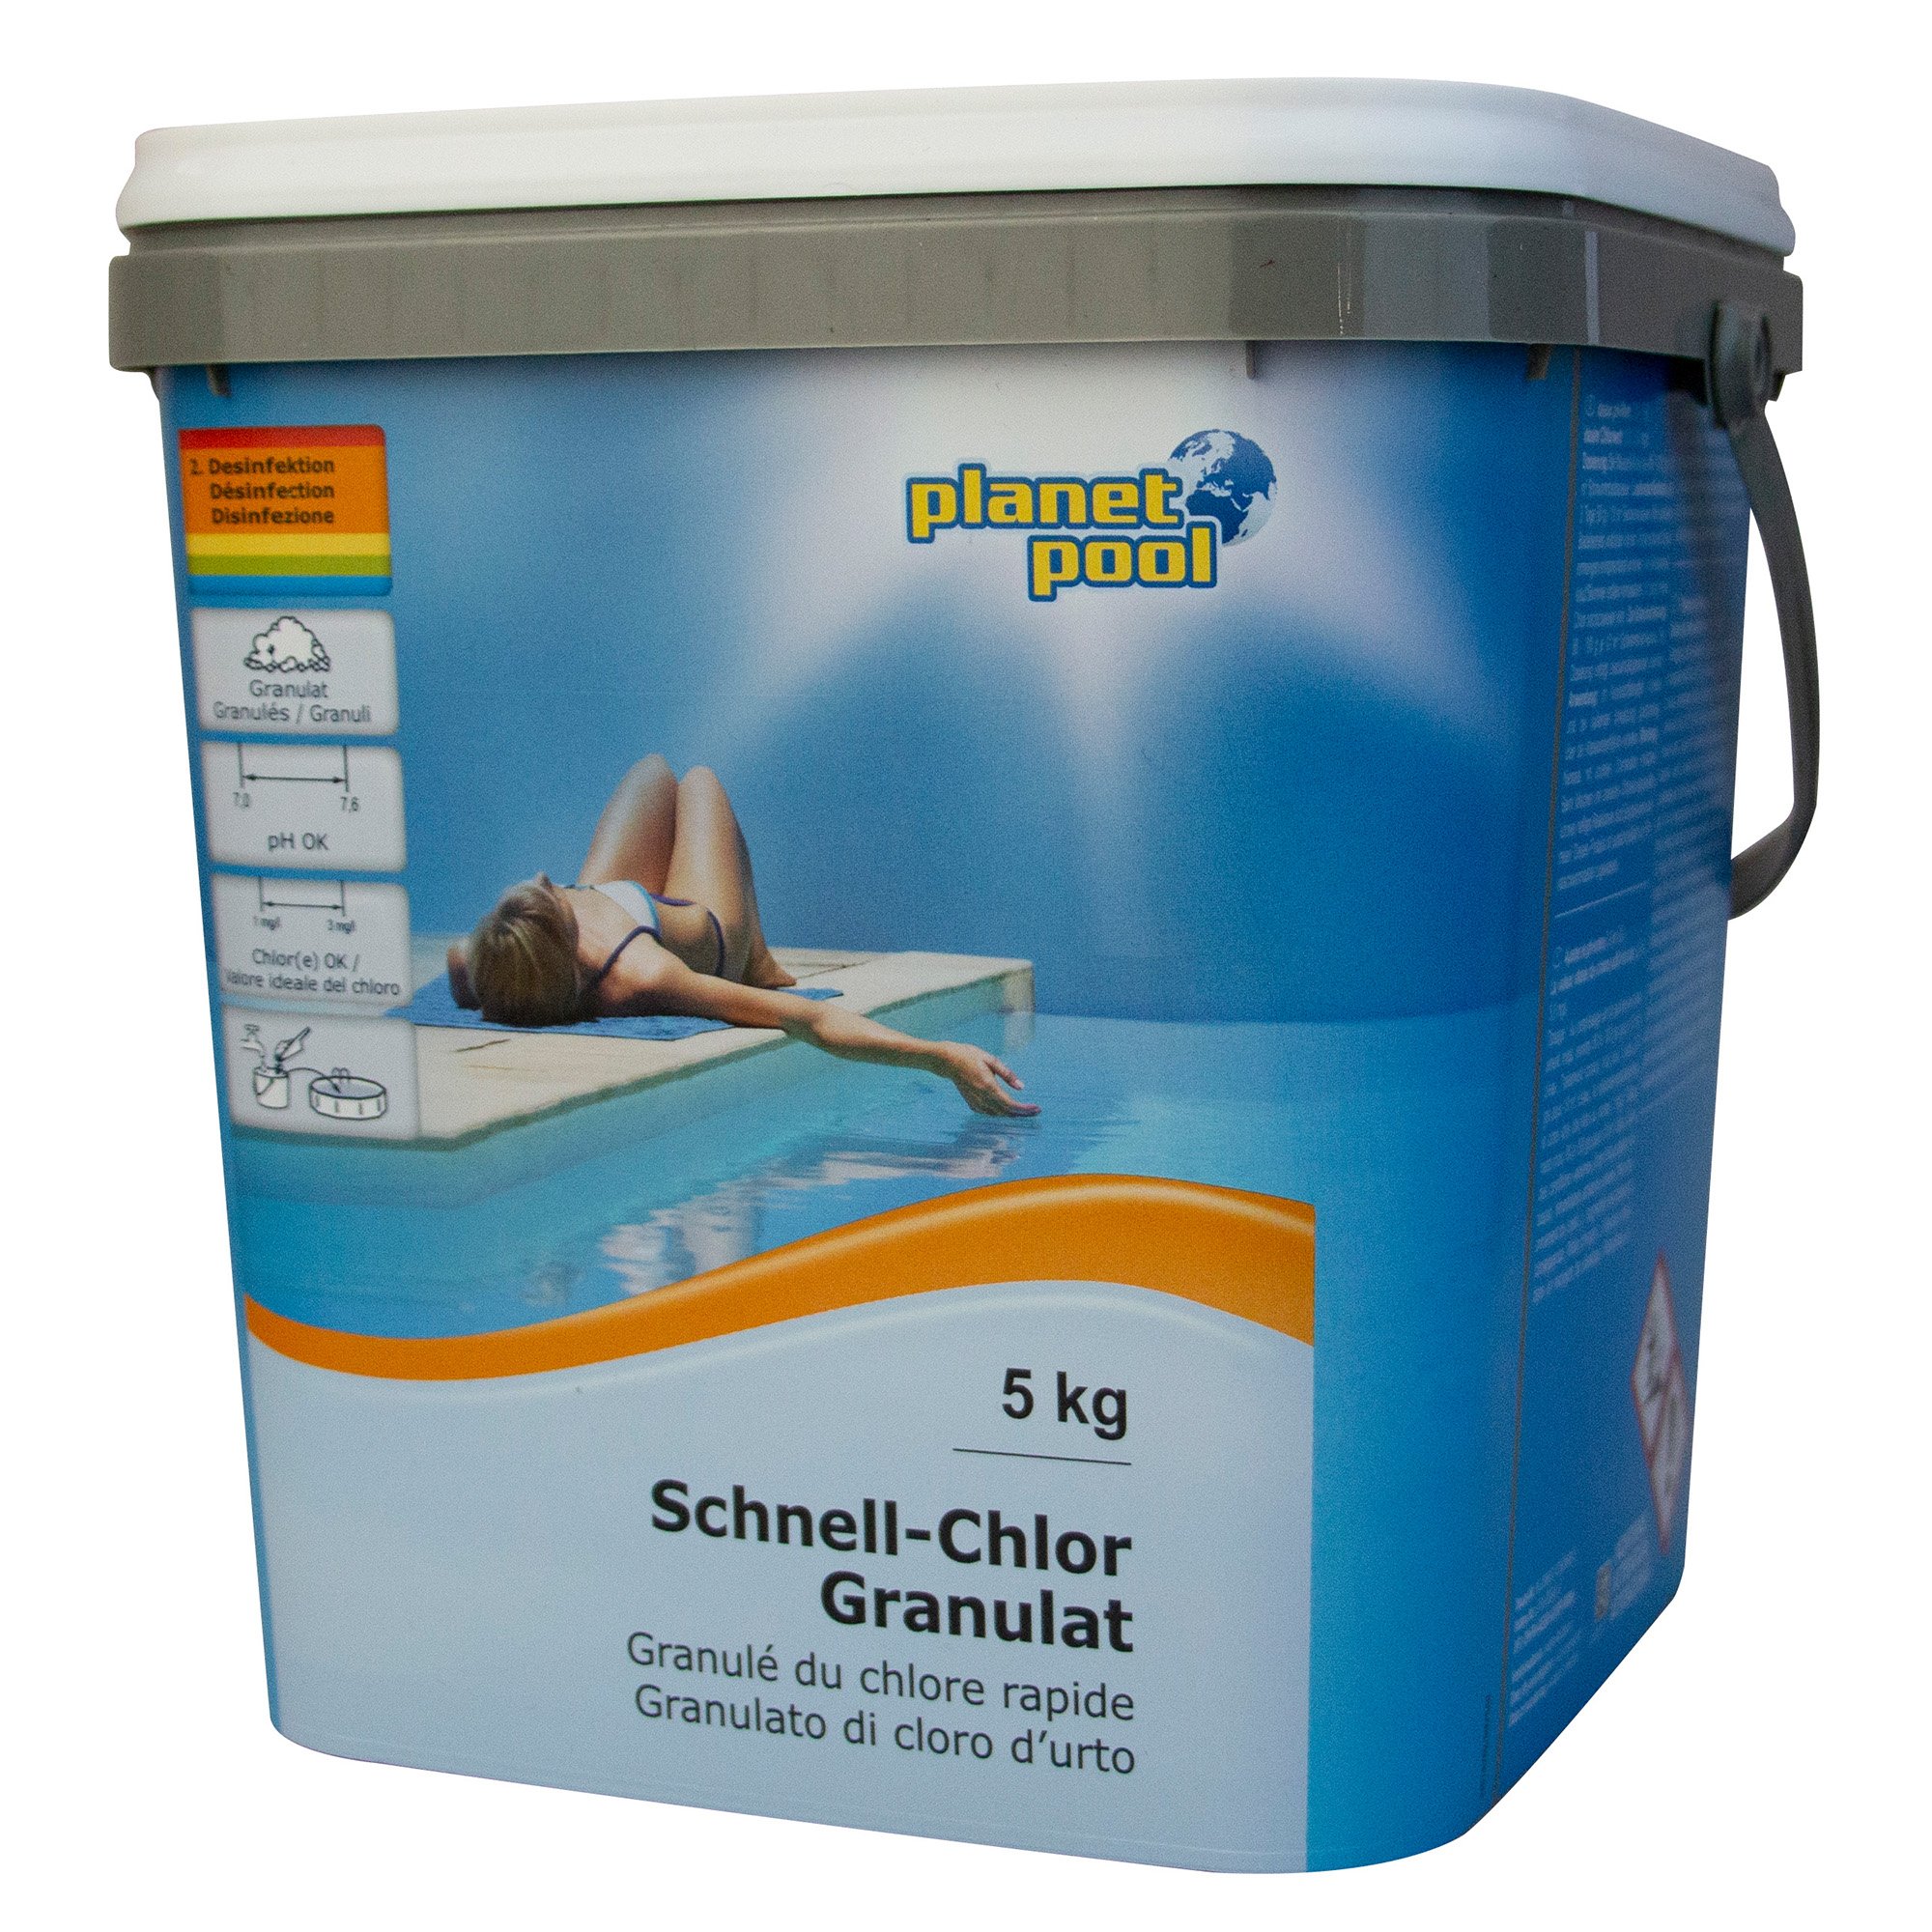 Planet Pool - Schnell-Chlor-Granulat, 5 kg